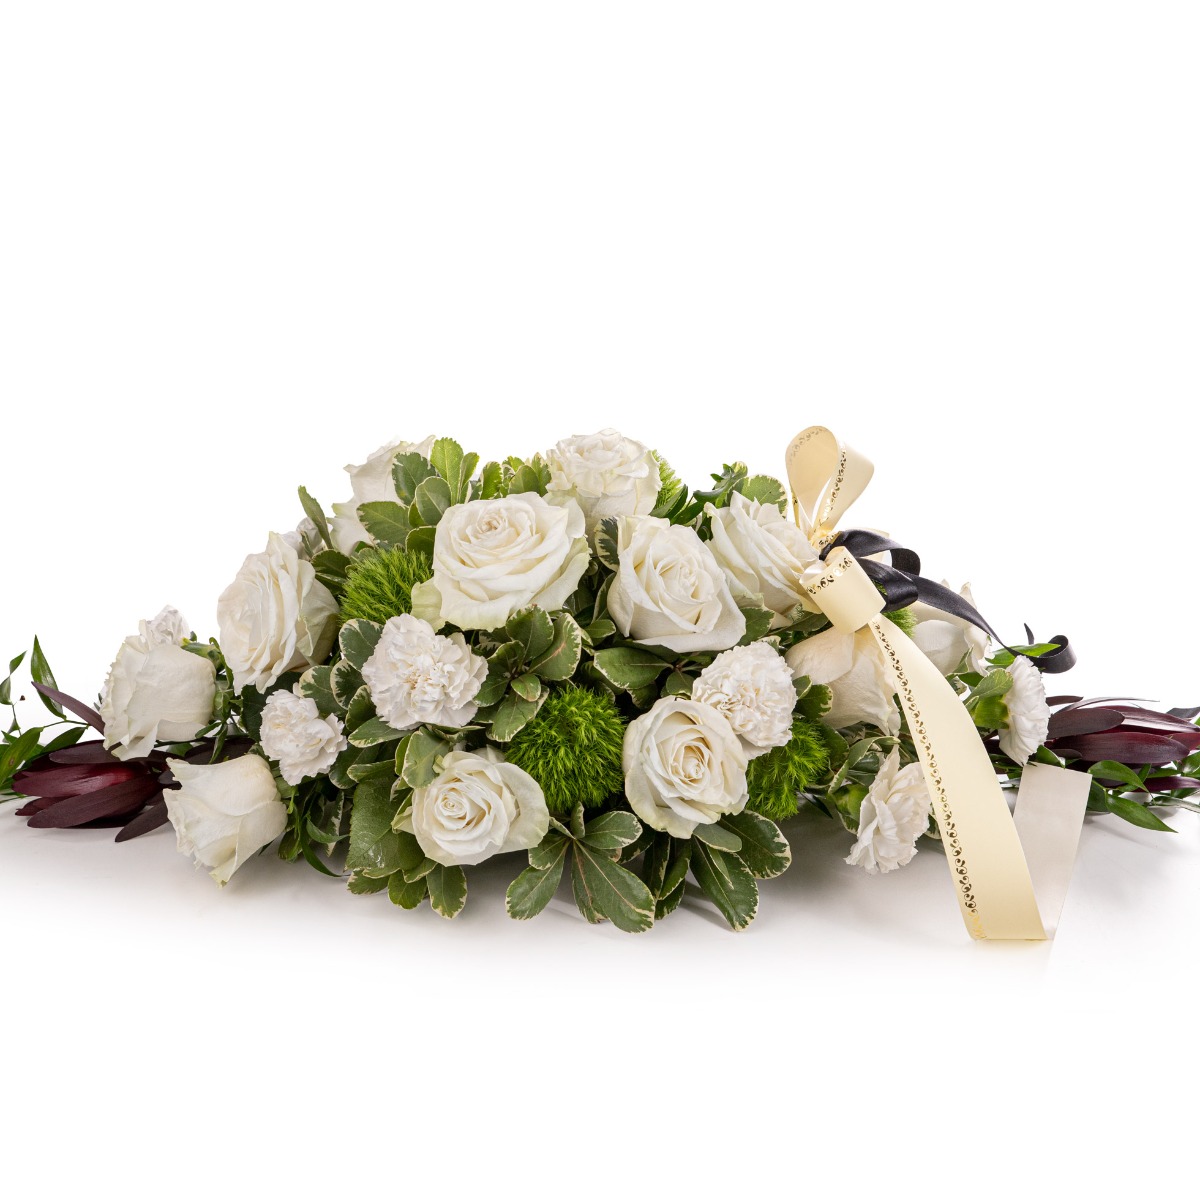 Aranjament funerar de lux cu trandafiri albi